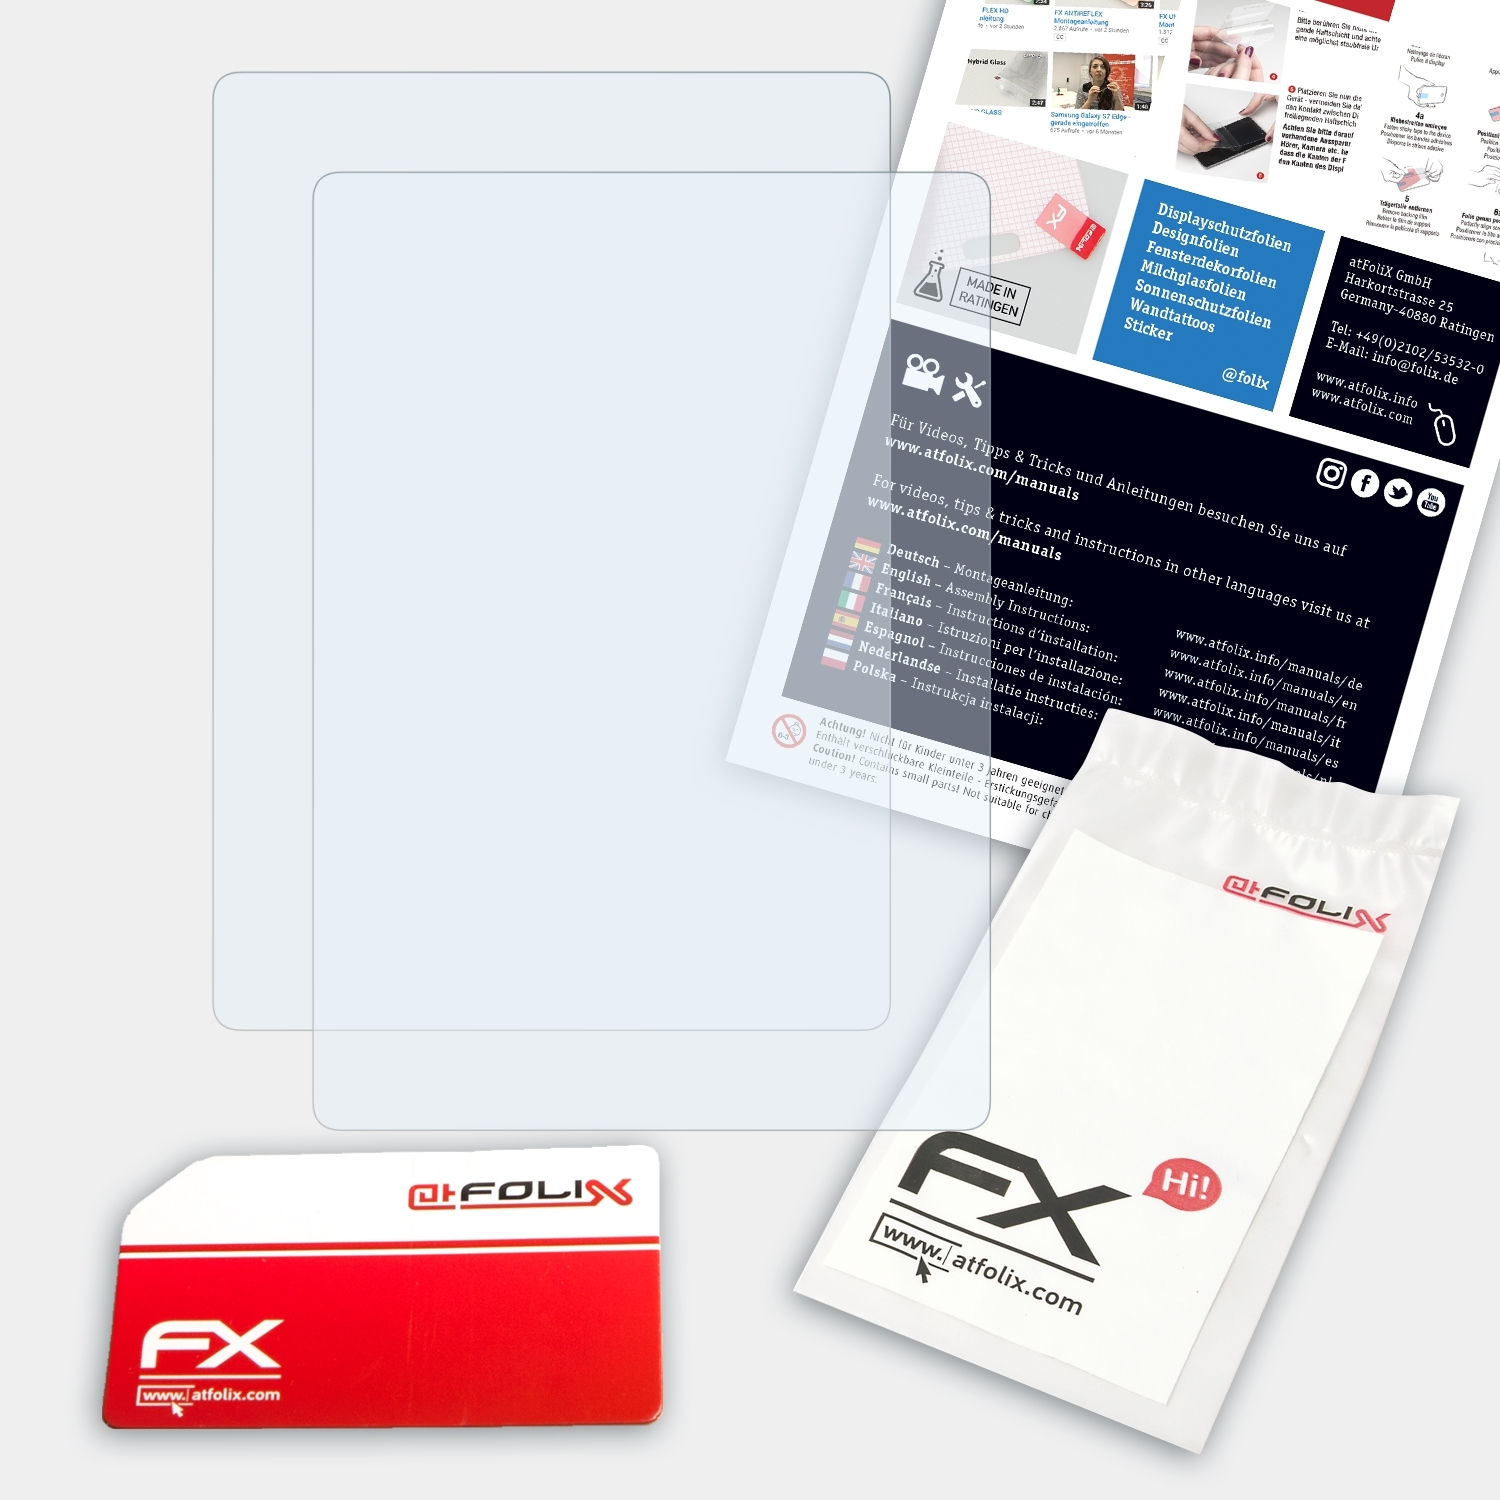 ATFOLIX 2x FX-Clear (11. 2021)) Amazon Kindle Generation Paperwhite Displayschutz(für